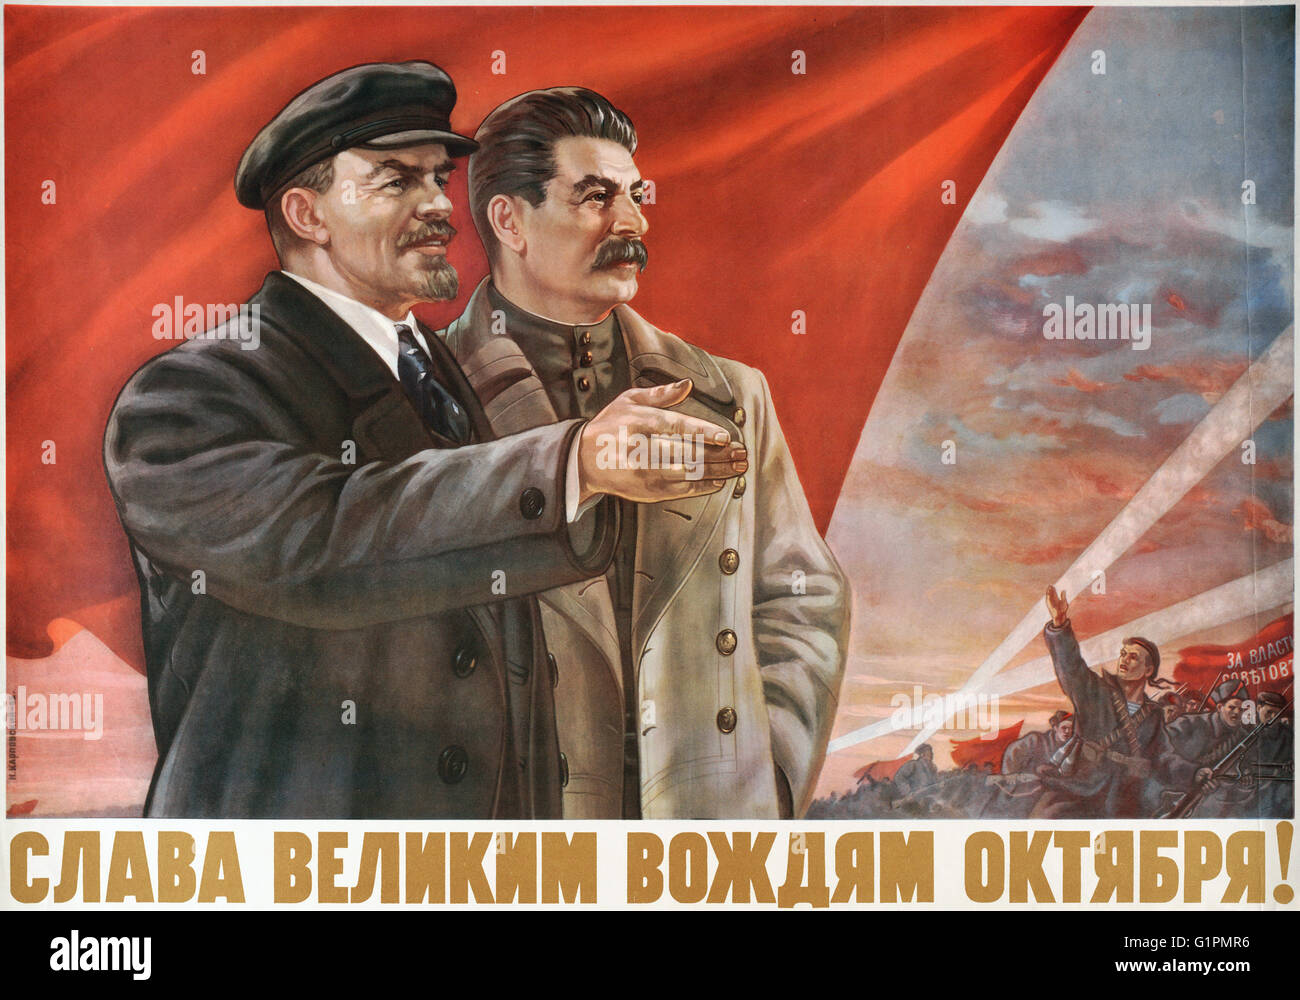 KOMMUNISTISCHEN POSTER, 1952.  "Ruhm der großen Führer der Oktober!" Lithografie von Naum Karpovsky, 1952. Stockfoto